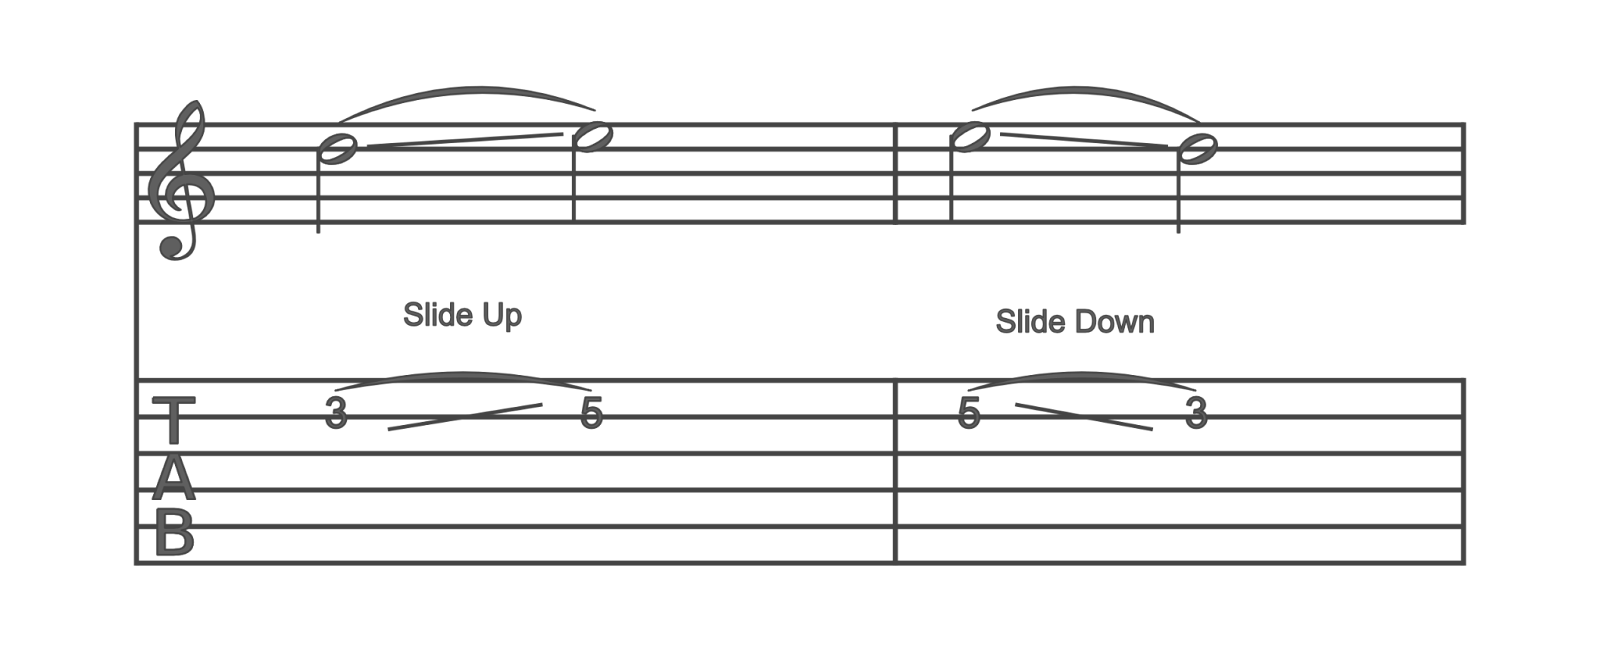 sliding music notes